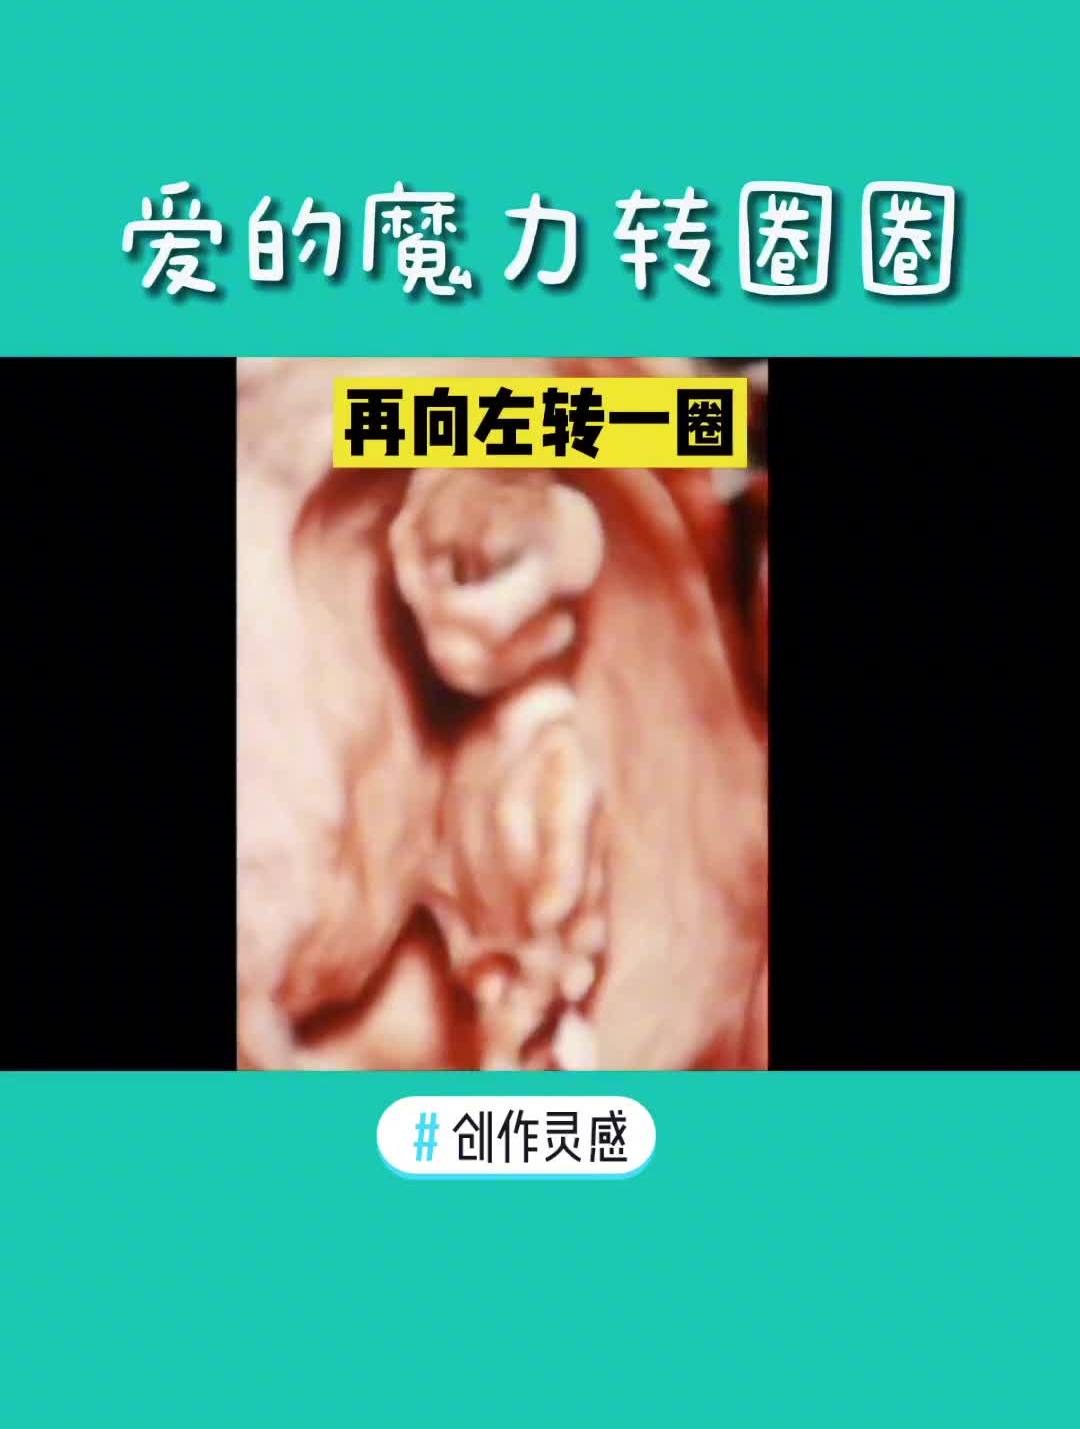 胎儿十一周的样子图片图片